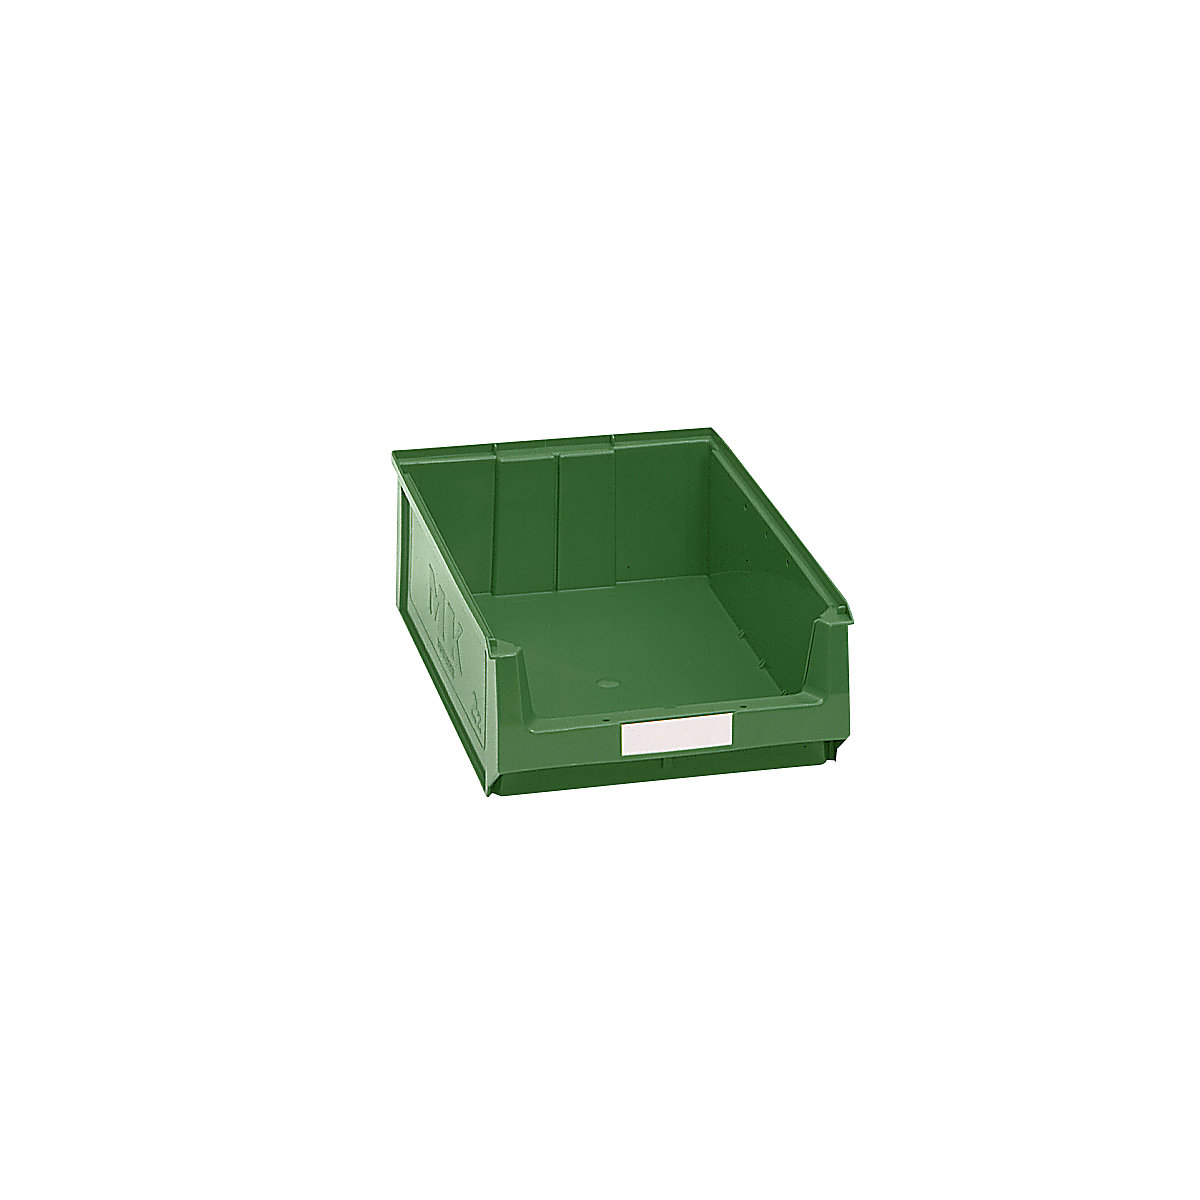 Prepravka s viditeľným obsahom z polyetylénu – mauser, d x š x v 500 x 310 x 140 mm, zelená, OJ 14 ks-7